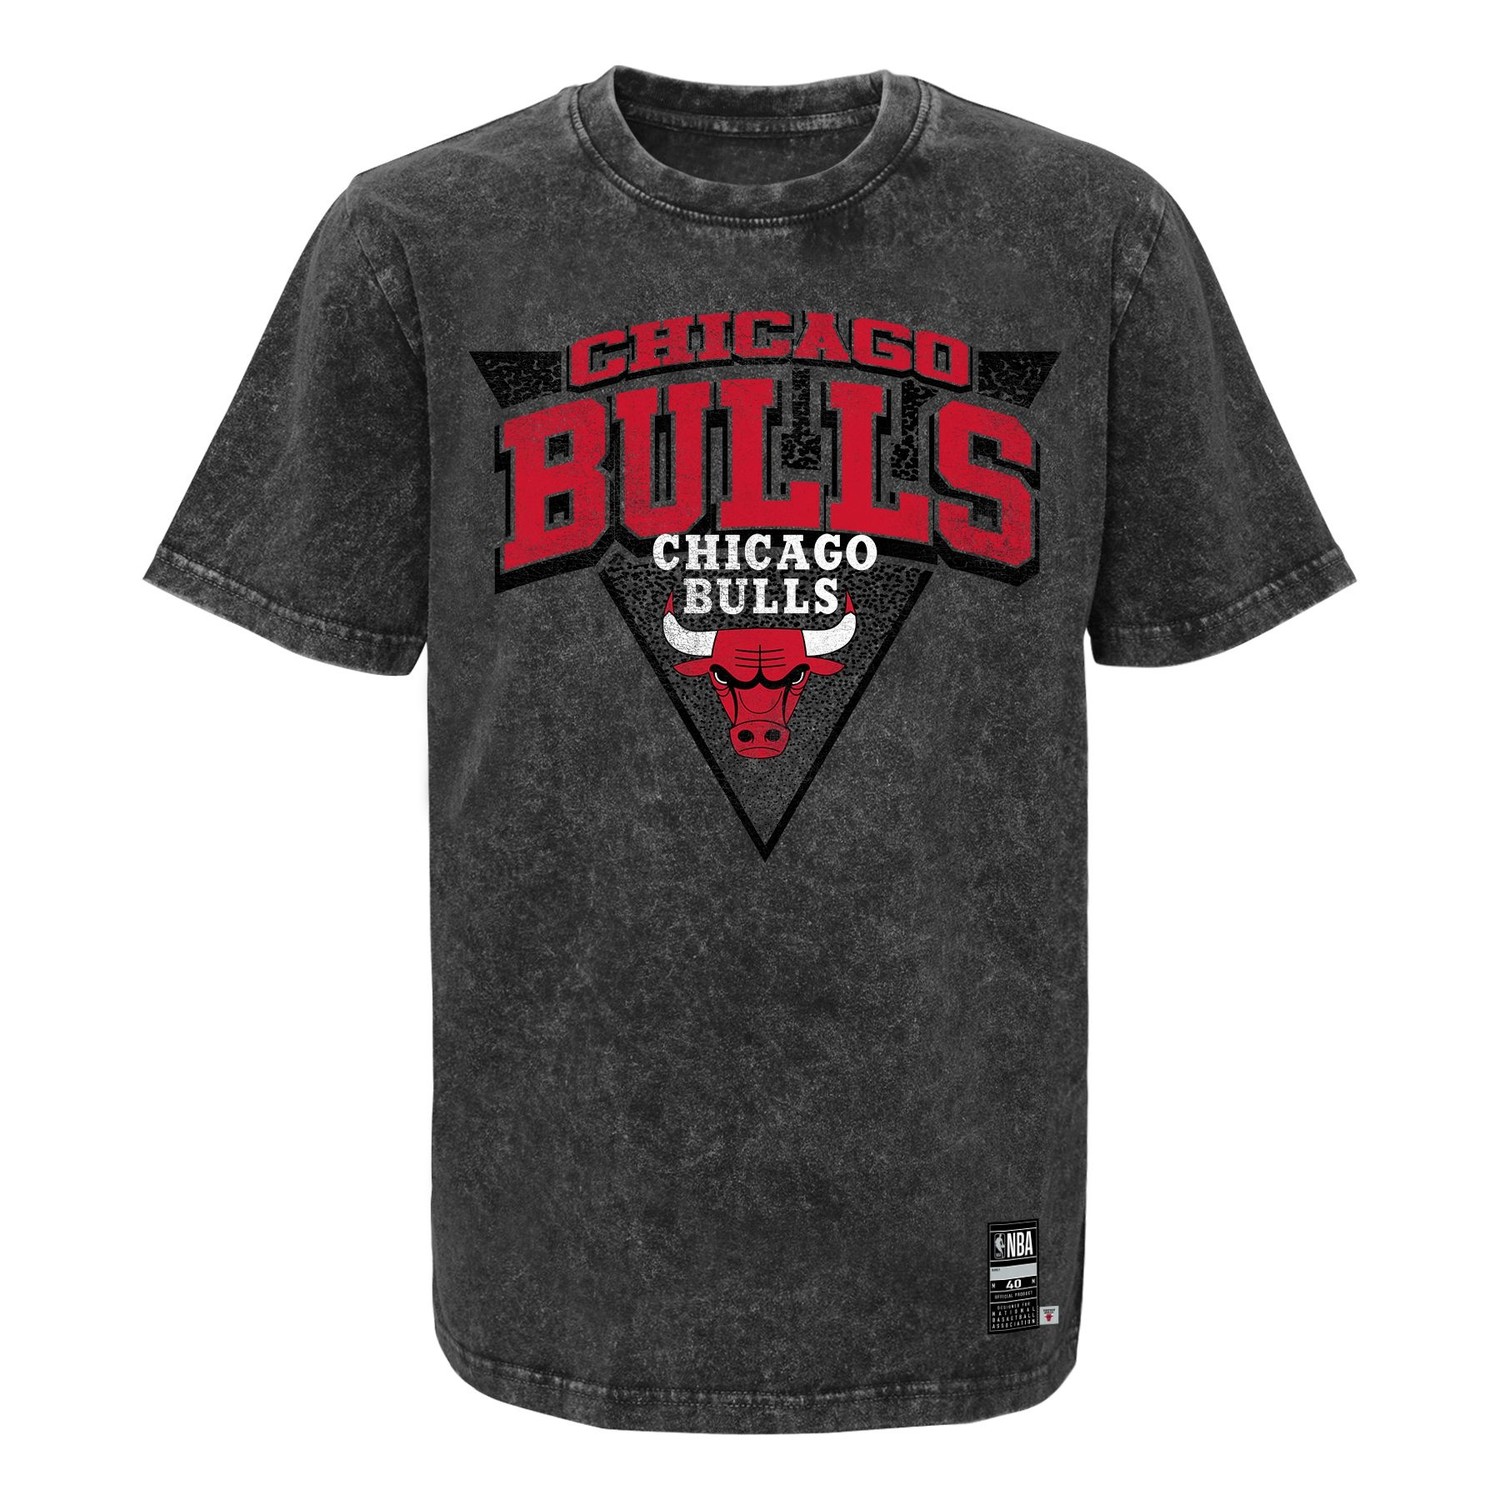 Outerstuff Chicago Bulls Youth Coin Toss T-Shirt Medium = 10-12